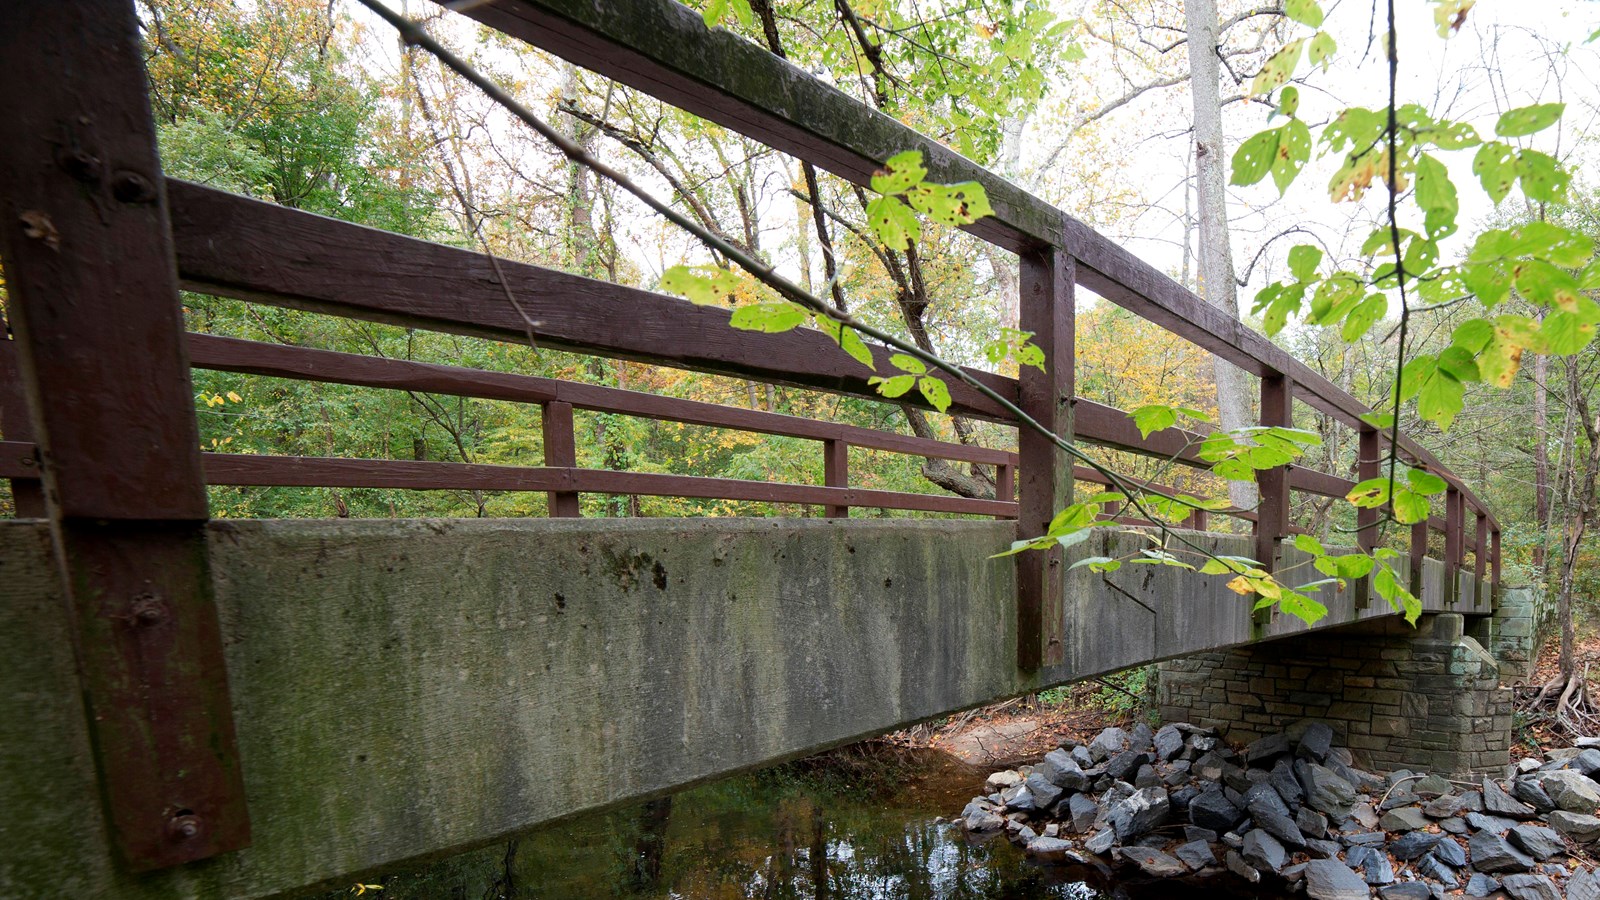 A concrete bridge with wooden railings crosses a creek.  